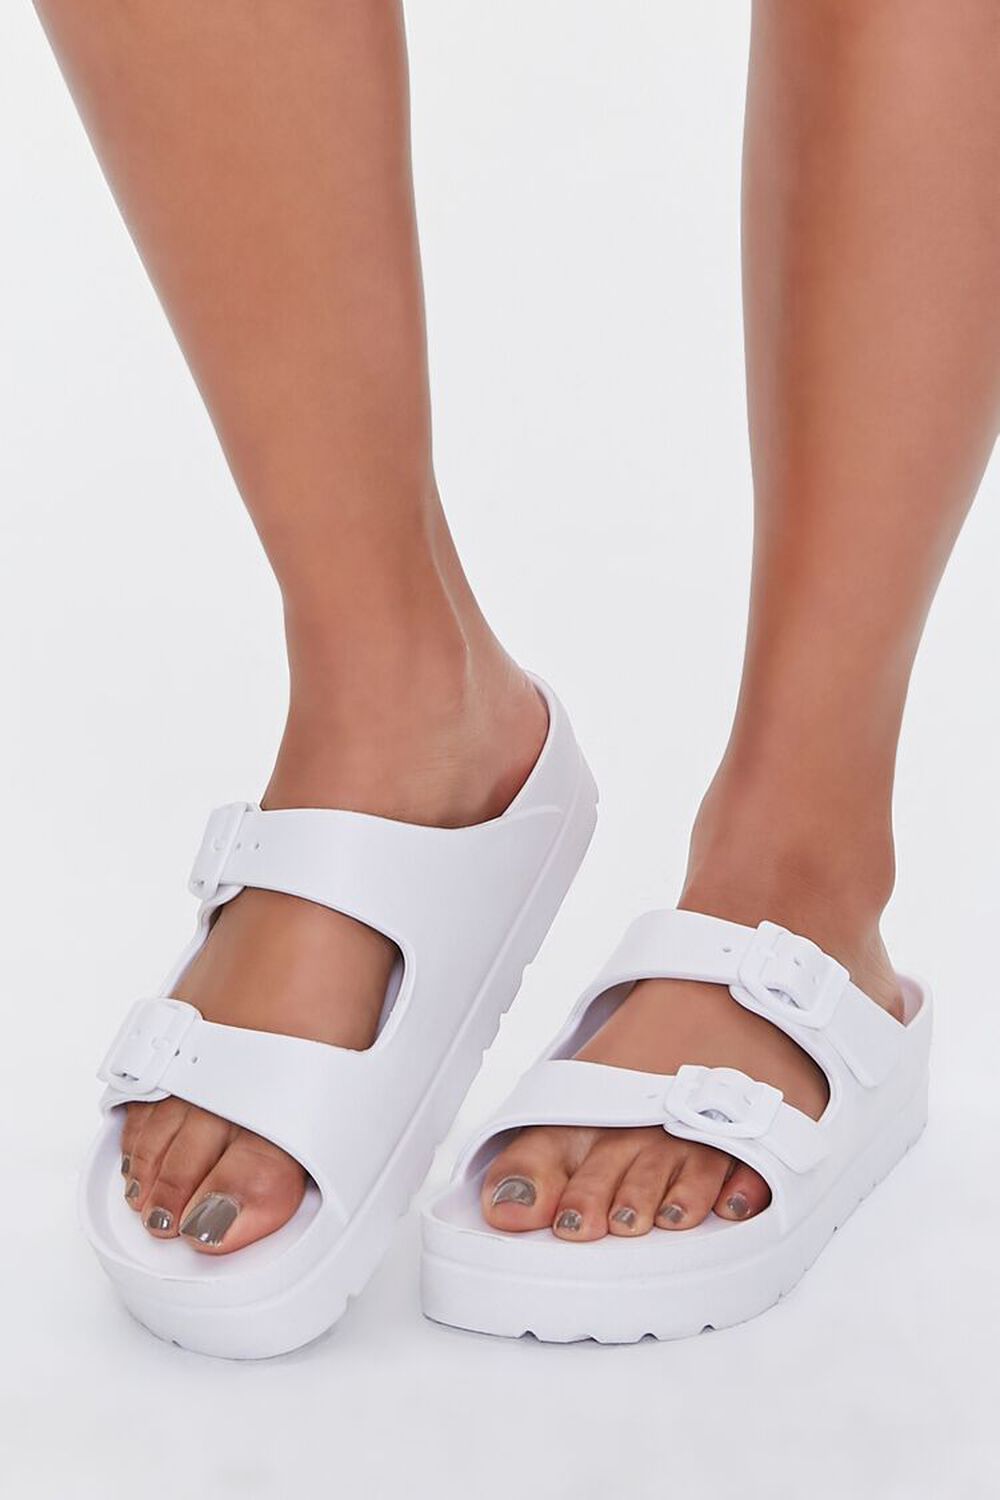 WHITE Buckled Flatform Sandals, image 1